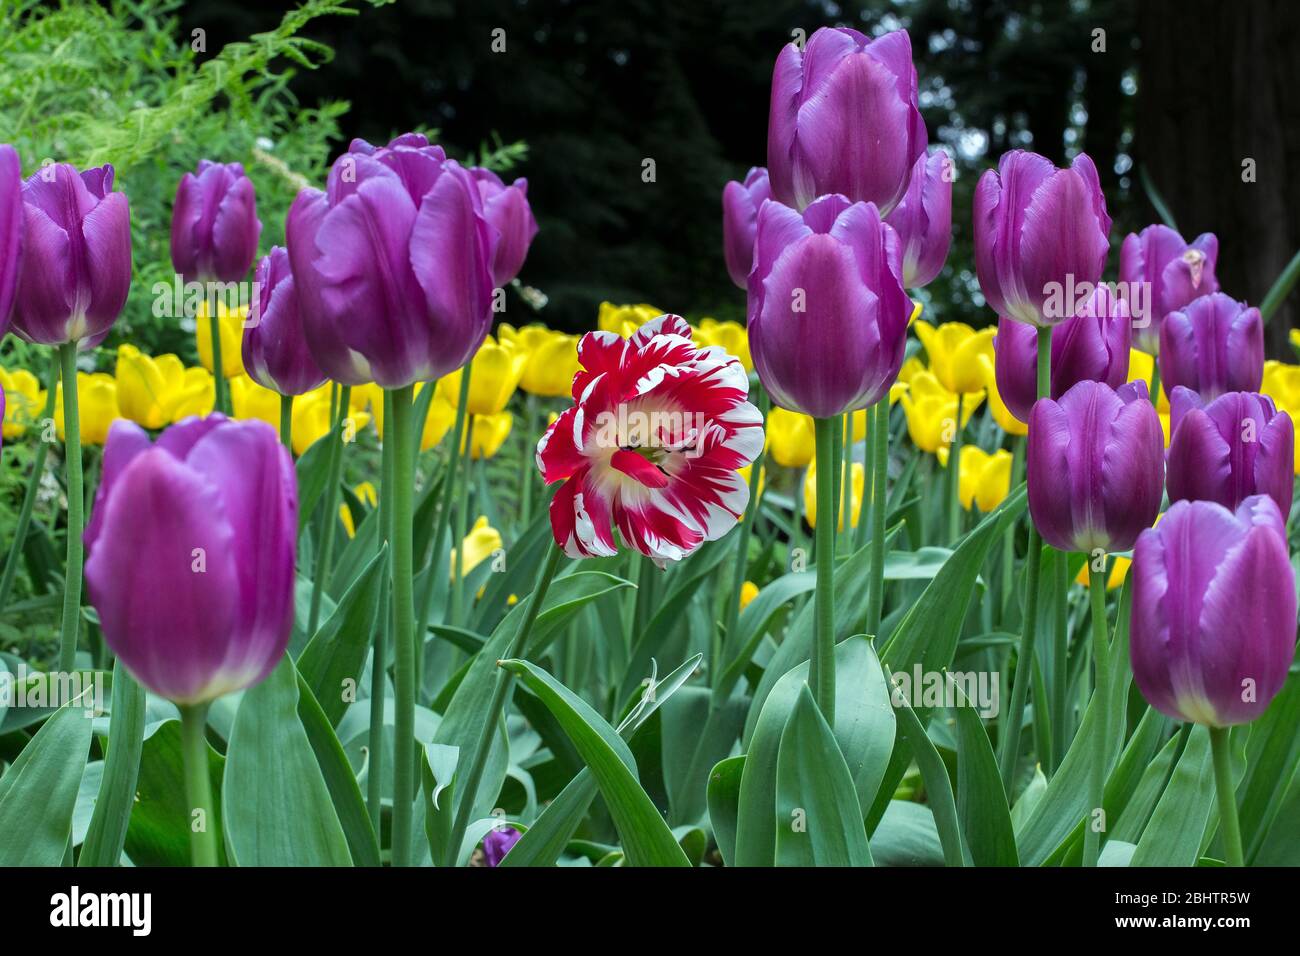 Foto de un grupo de tulipanes púrpura y un tulipanes rojo y blanco en el centro. Concepto de destacar de la multitud. Foto de stock